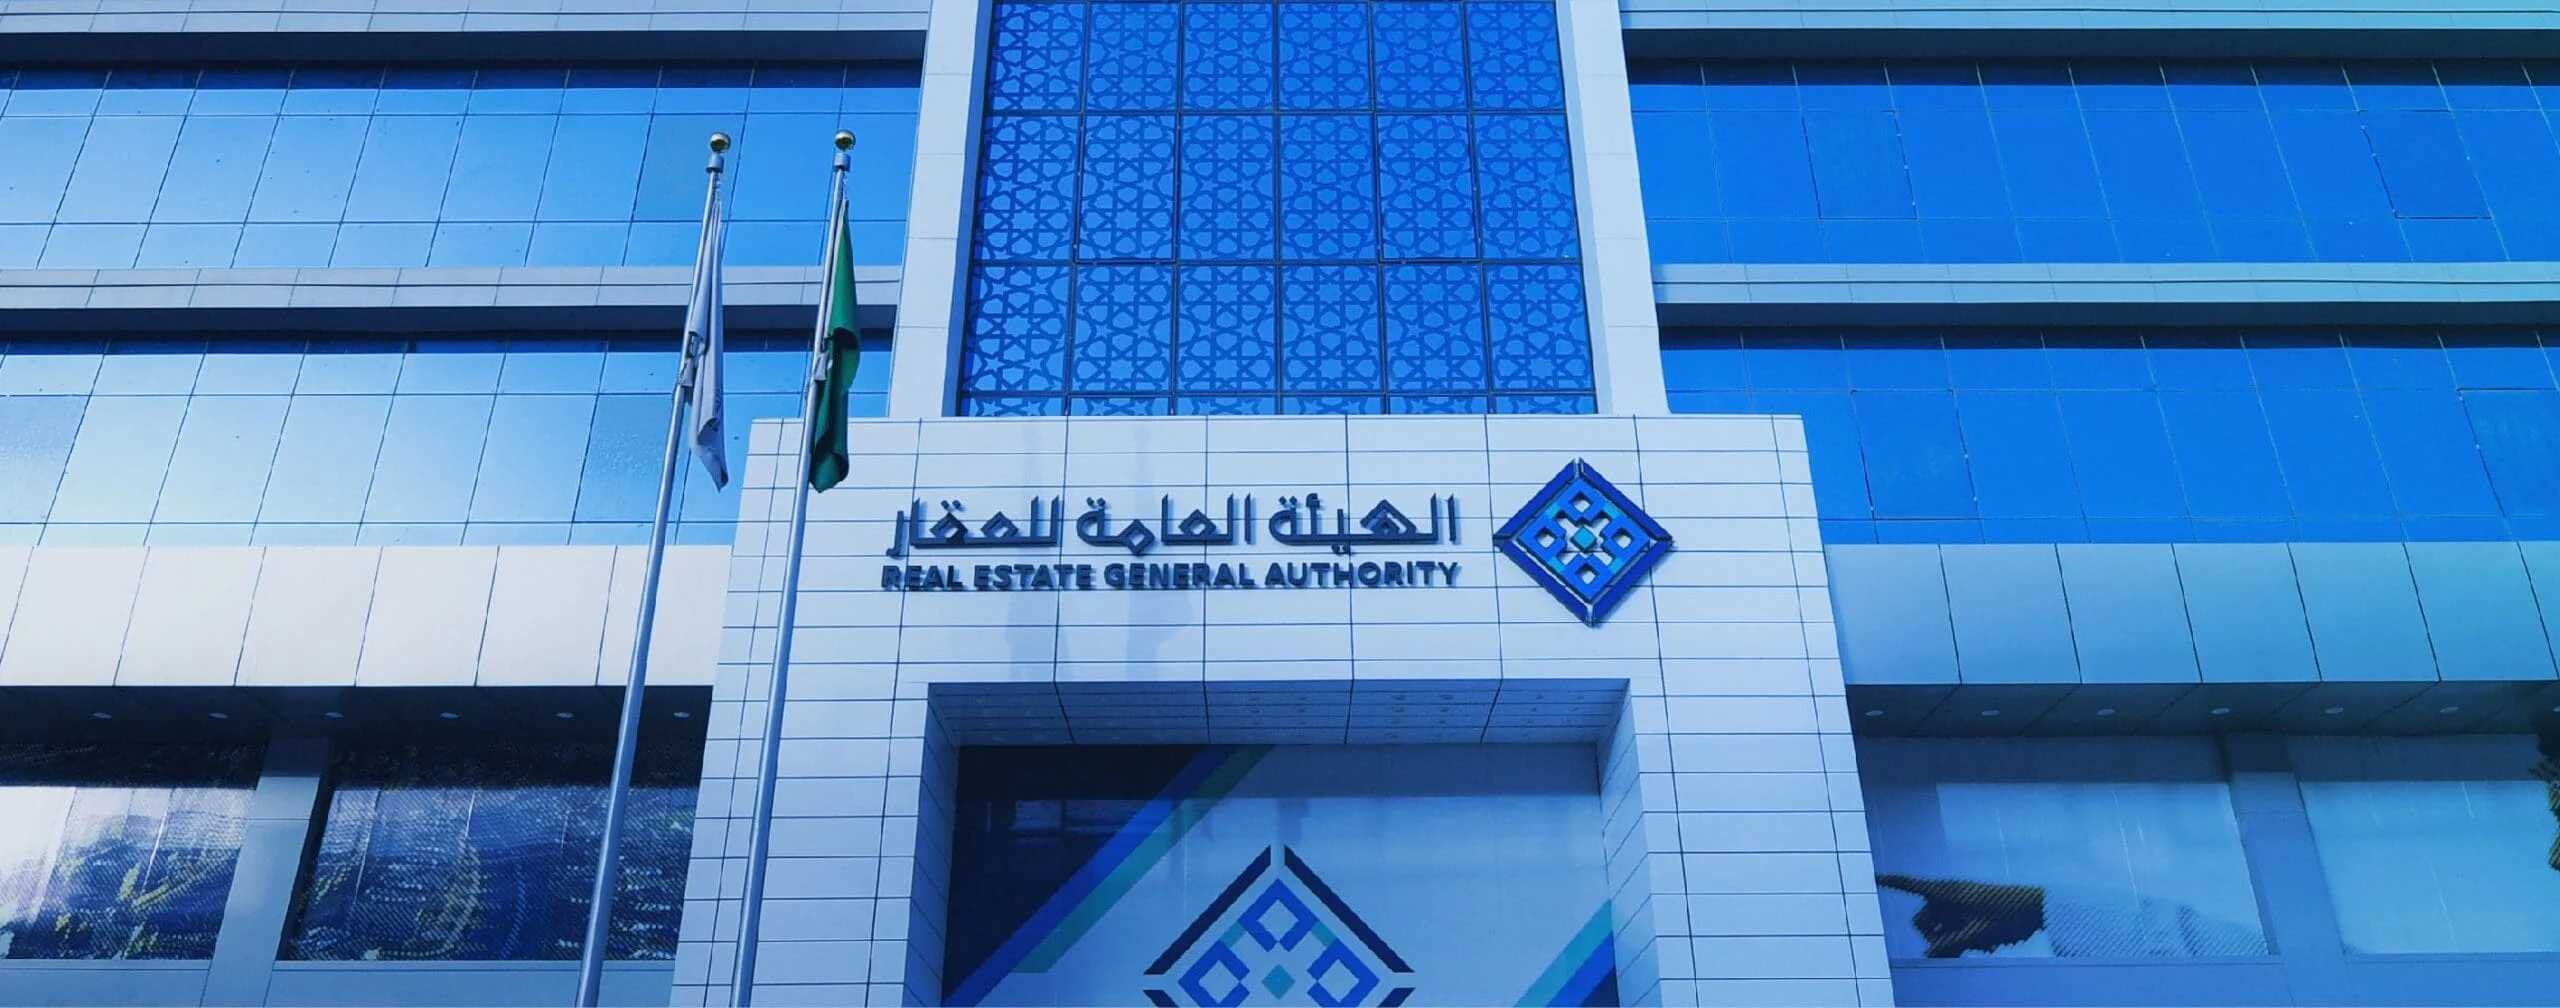 مقالة  : “الهيئة العامة لعقارات الدولة” تعلن عن وظائف شاغرة لحملة البكالوريوس في الرياض